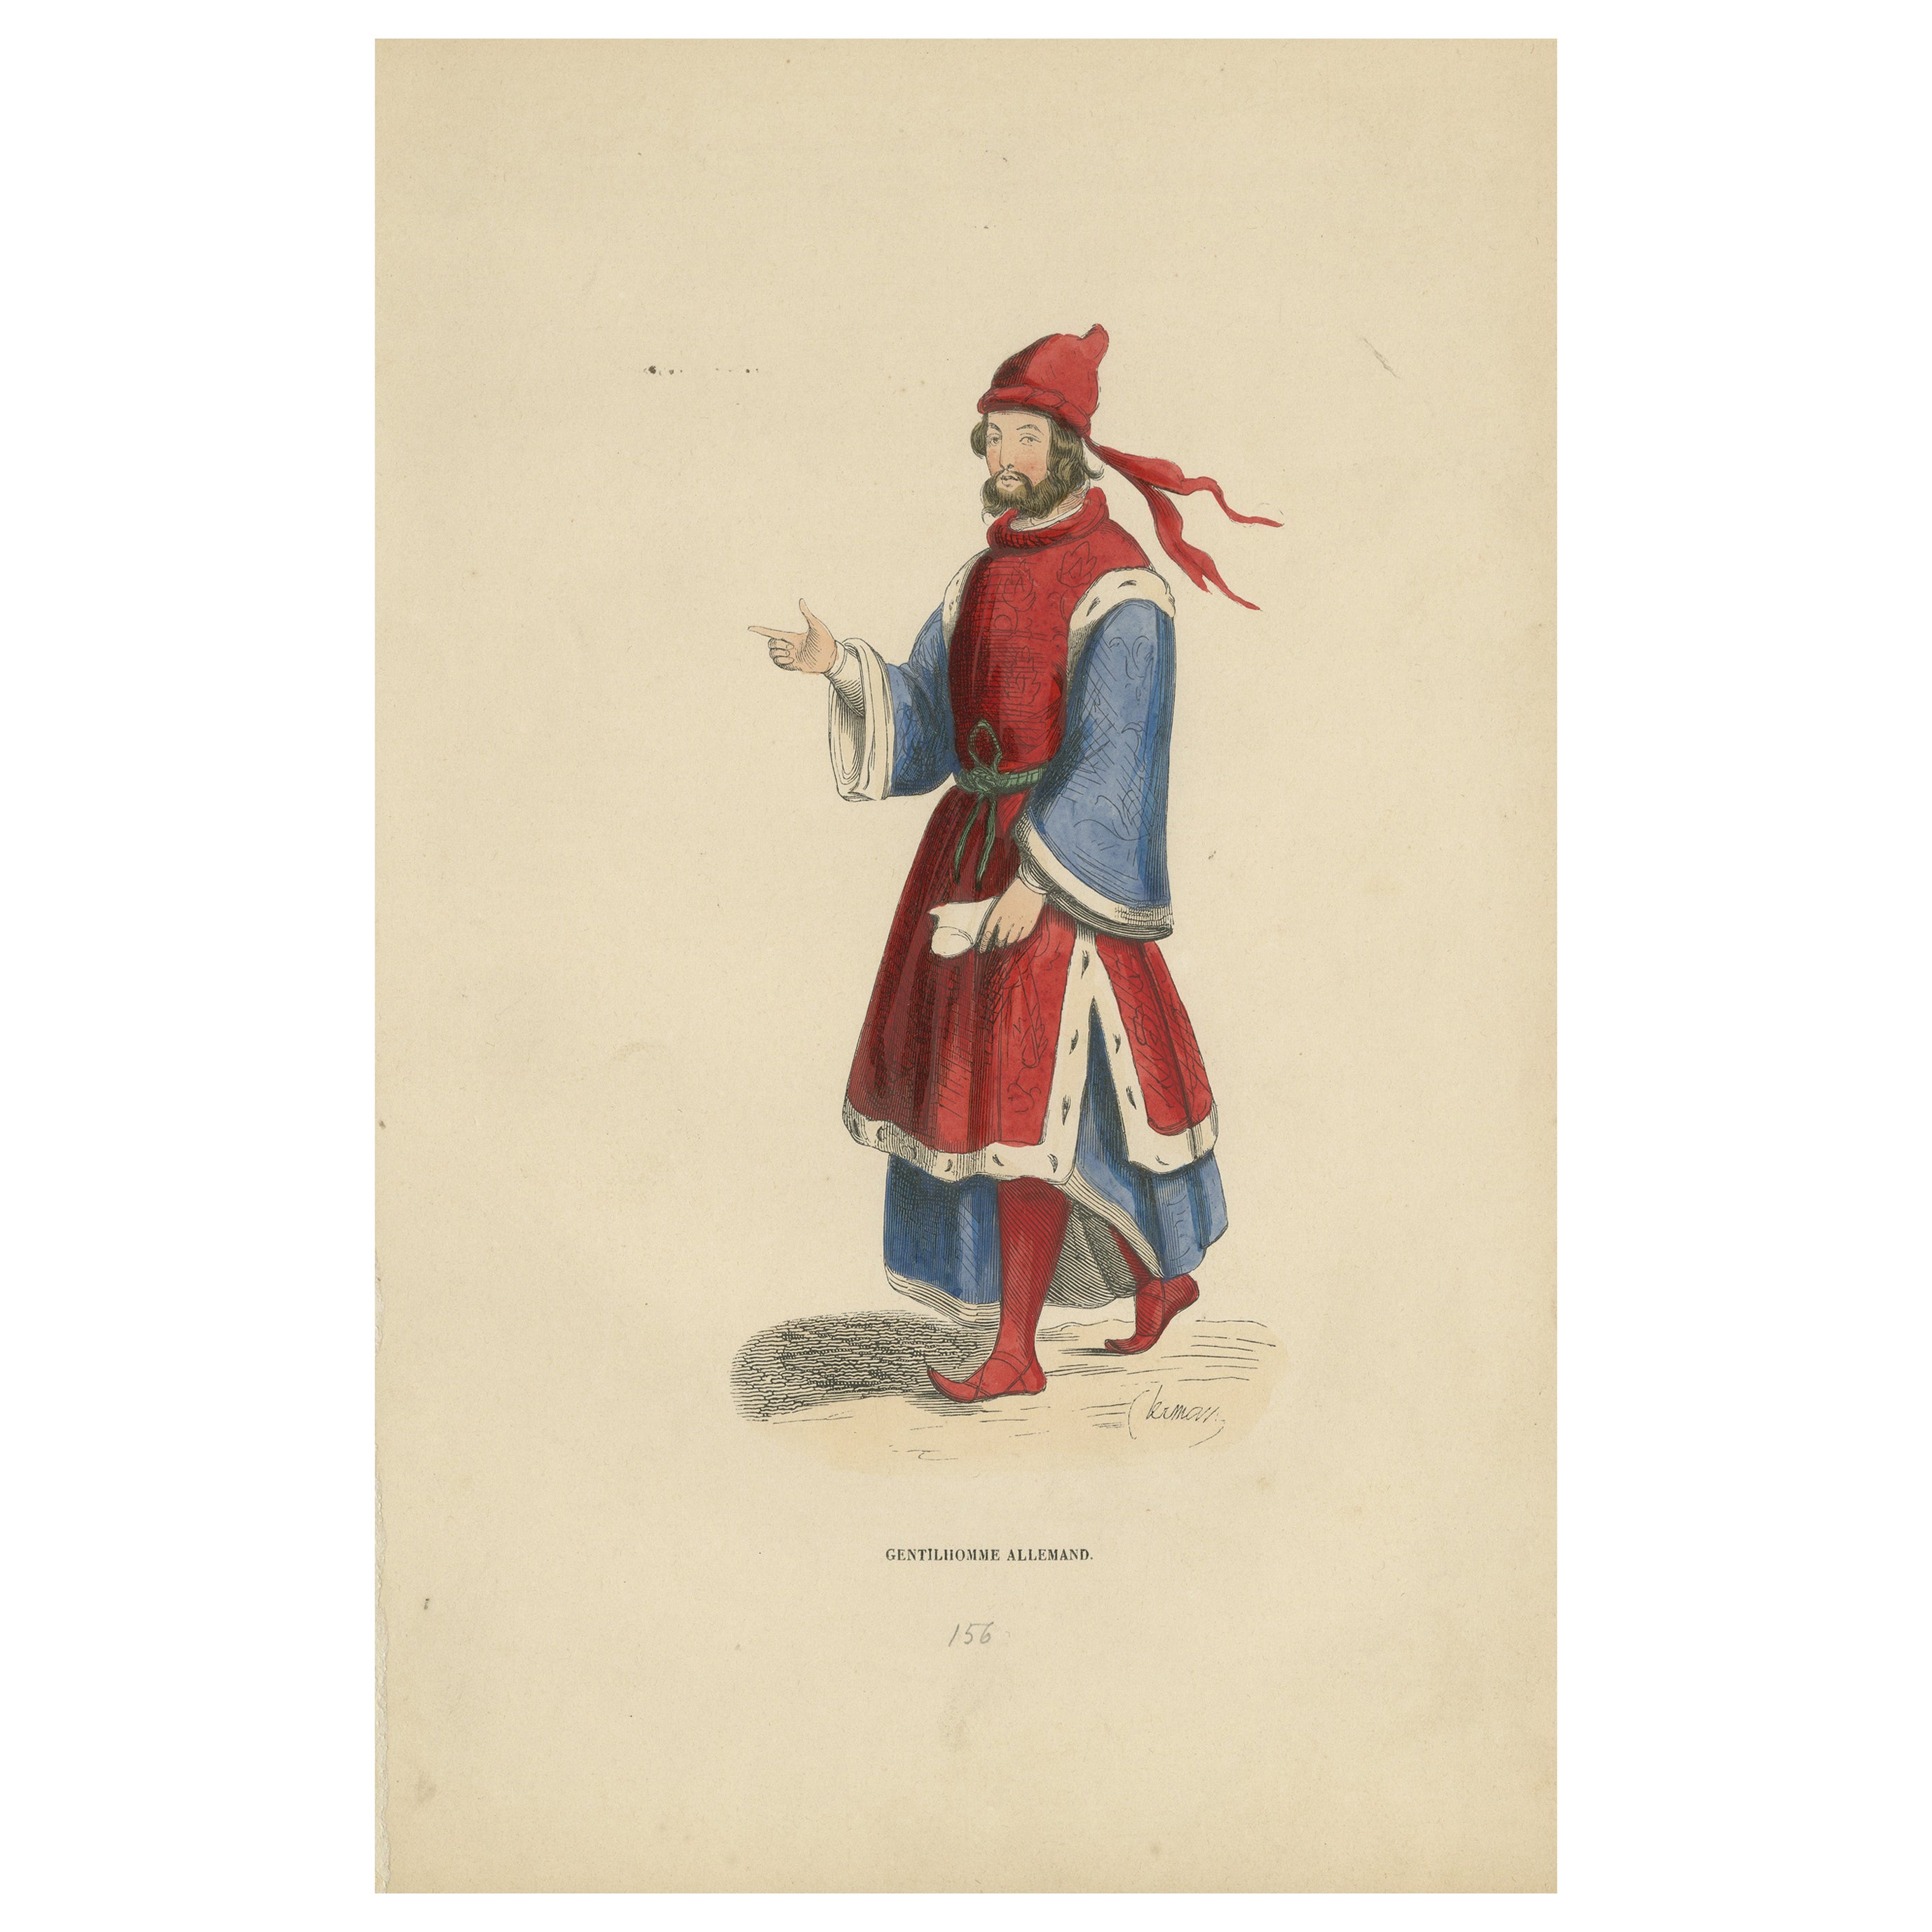 Noble Bearing: Ein deutscher Gentleman im mittelalterlichen Anzug, 1847